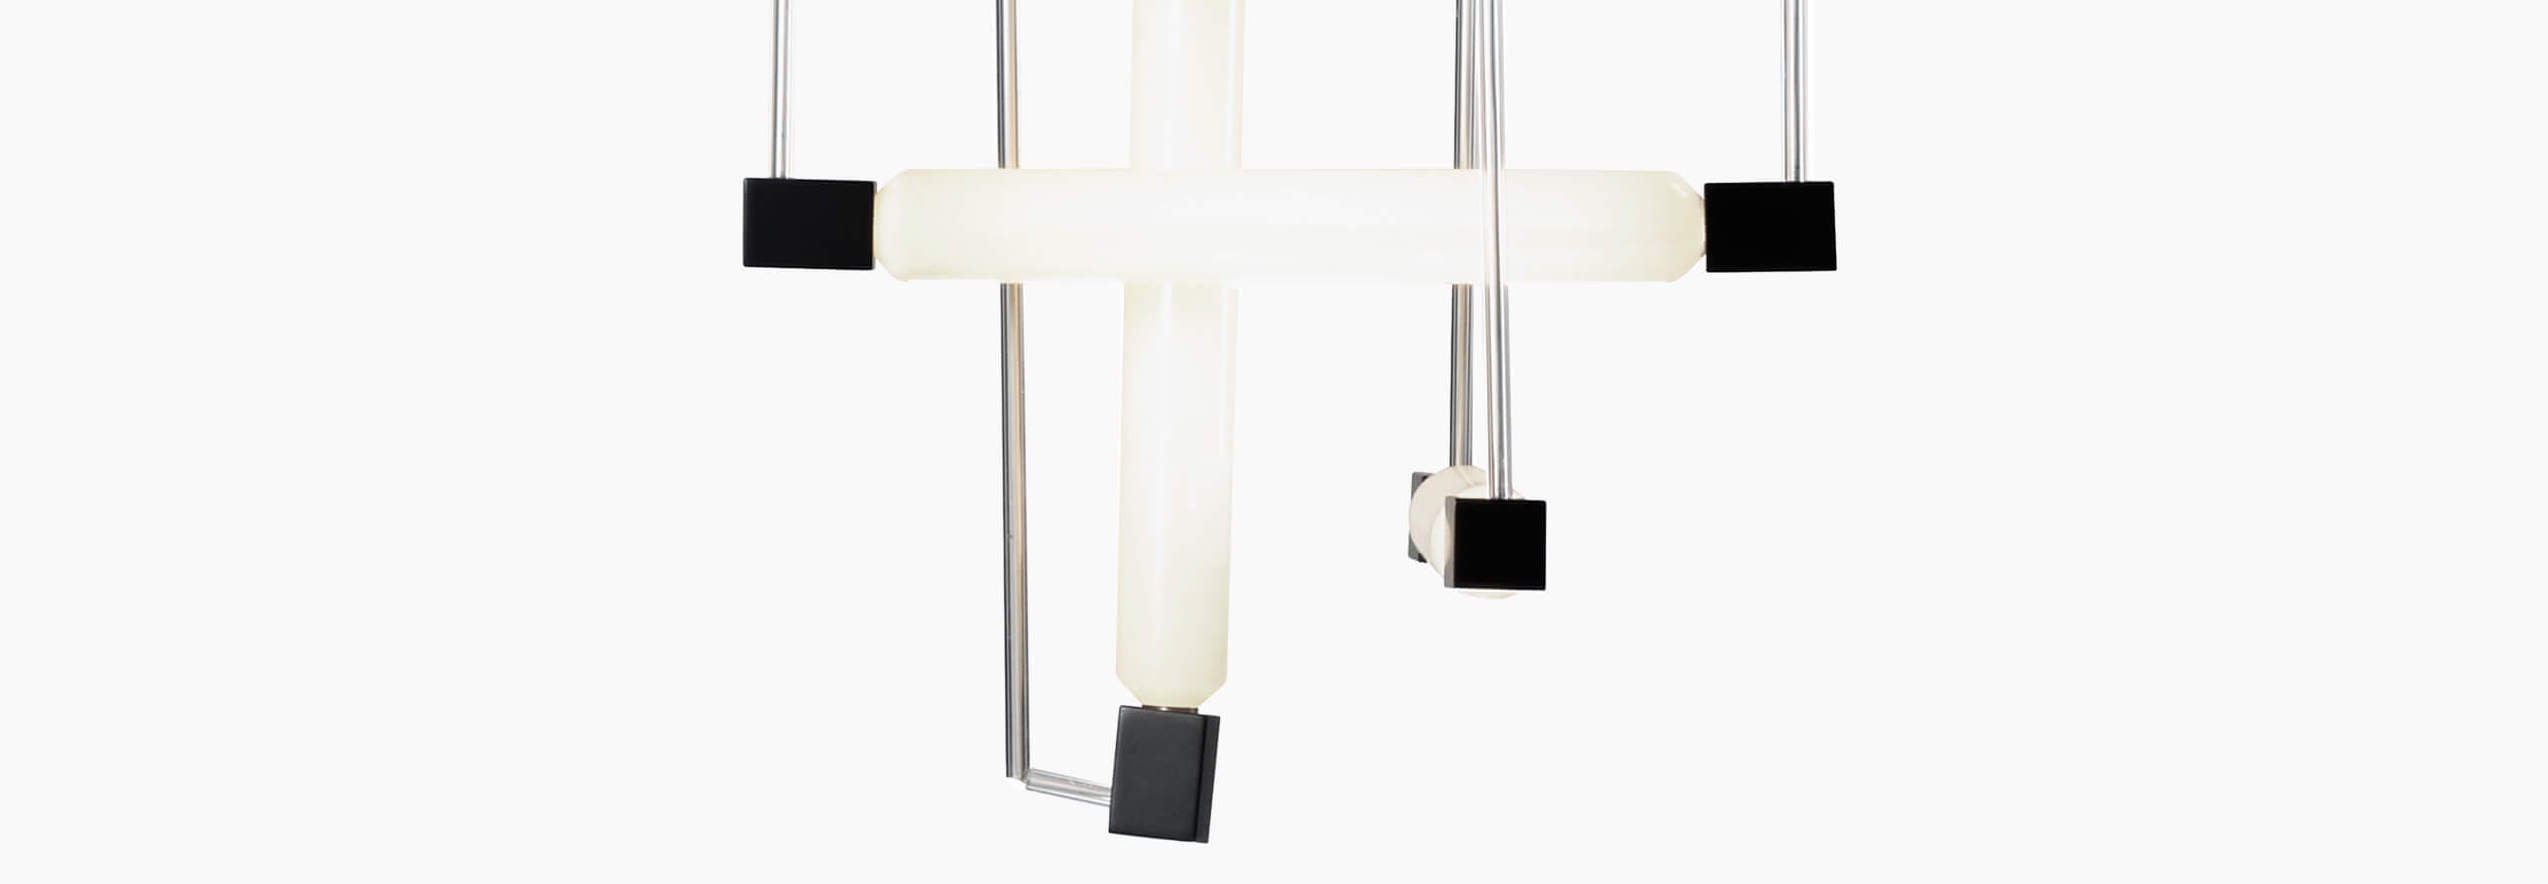 Buy Rietveld lighting/lamps? | Rietveld